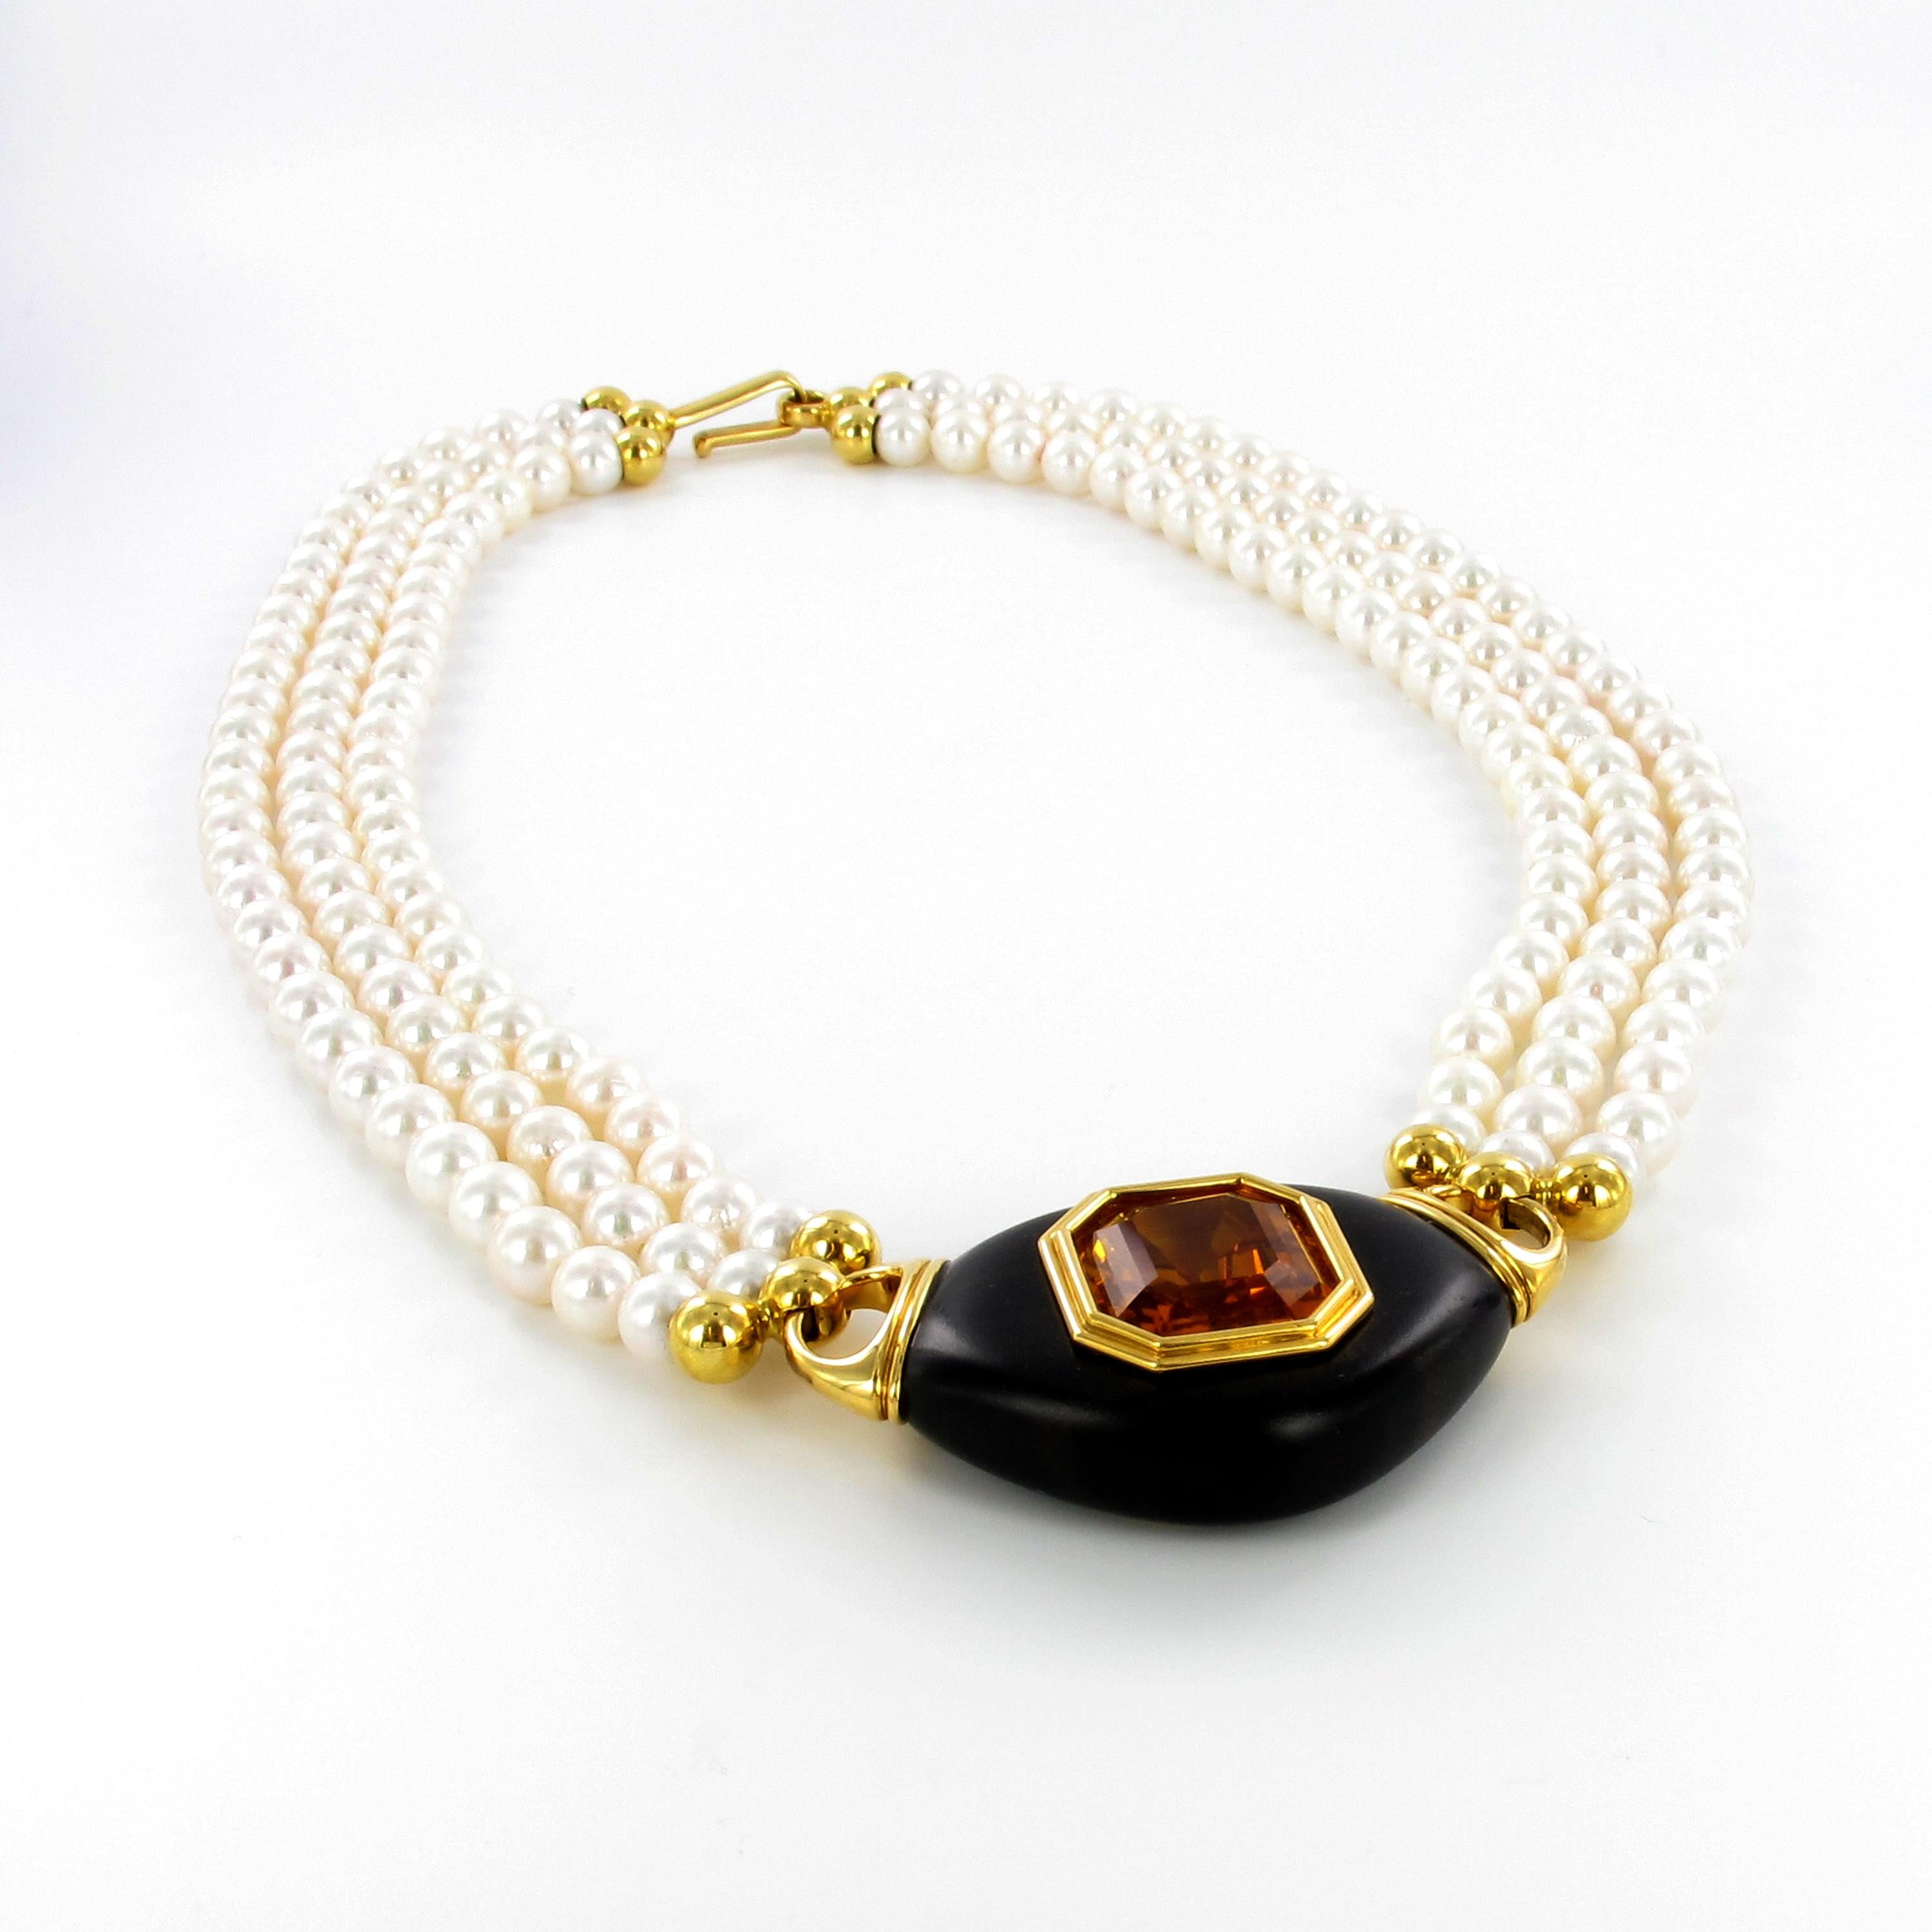 Diese exquisite und kühne Halskette zeigt einen achteckigen Citrin von 15,70 Karat, gefasst in 18 Karat Gelbgold und eingebettet in glatt poliertes Ebenholz. Befestigt an einer dreisträngigen Halskette aus 172 runden Akoya-Zuchtperlen von 6,0 bis